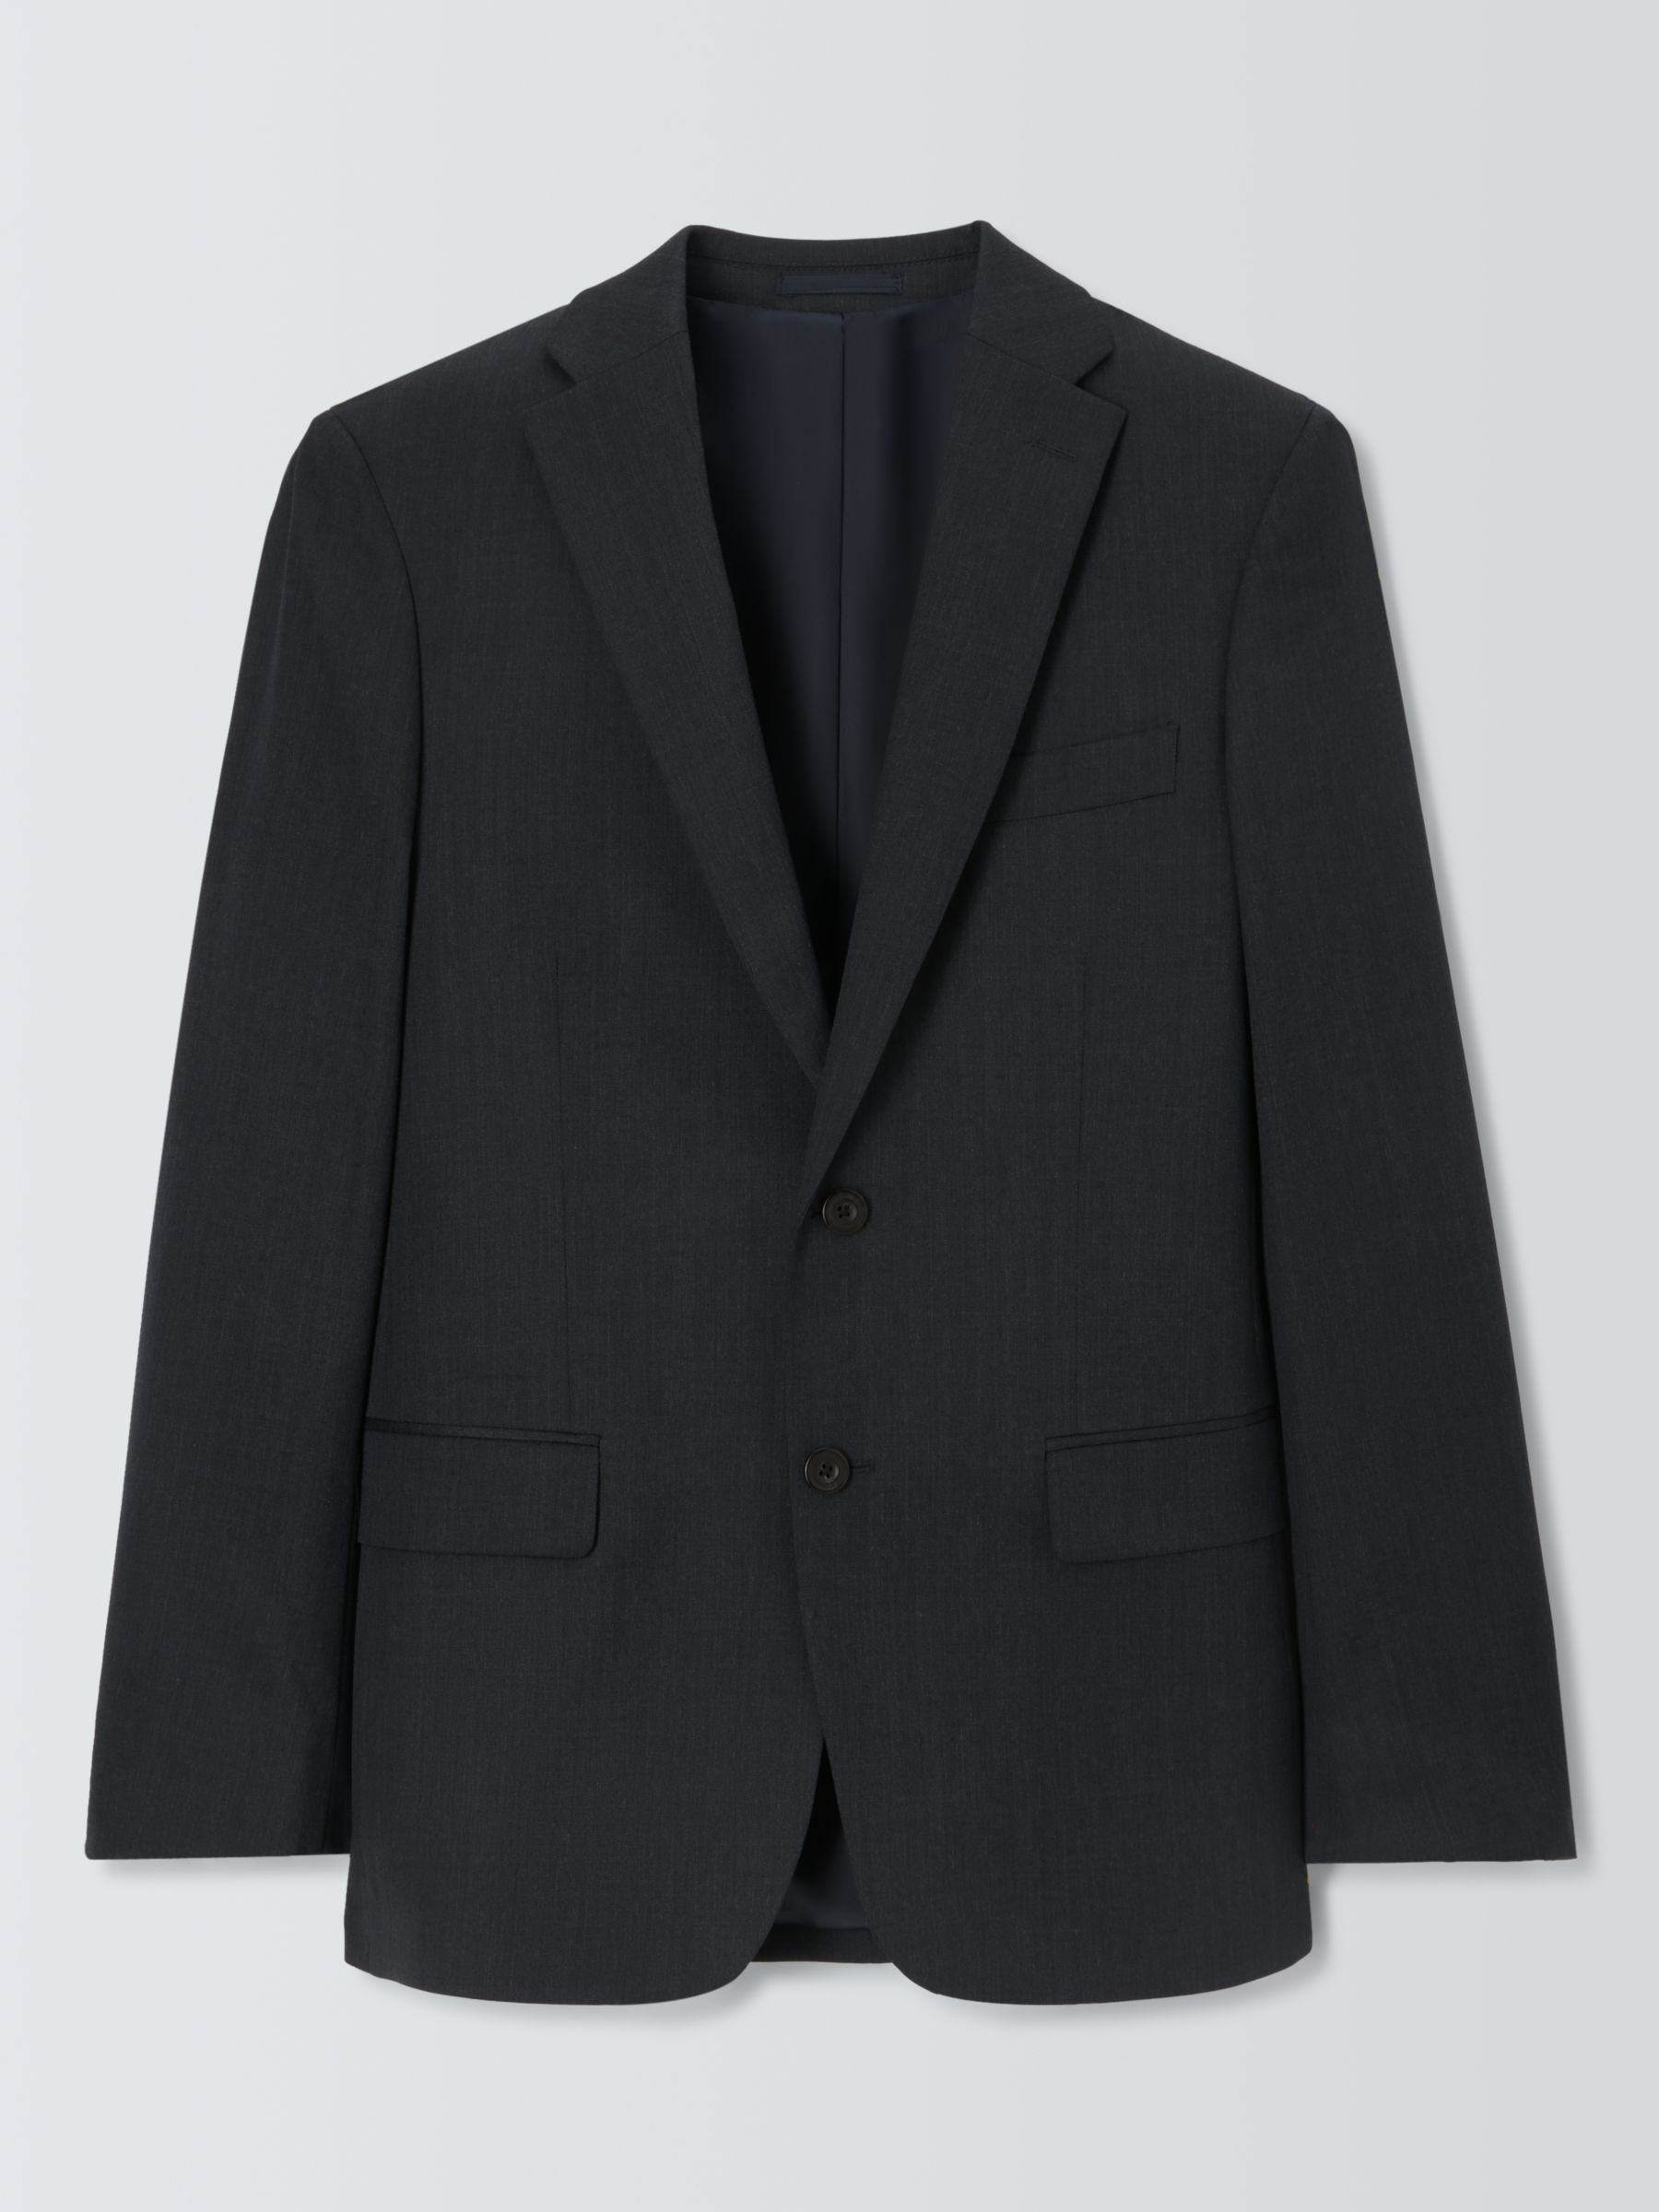 Buy John Lewis Washable Wool Blend Regular Fit Suit Jacket Online at johnlewis.com